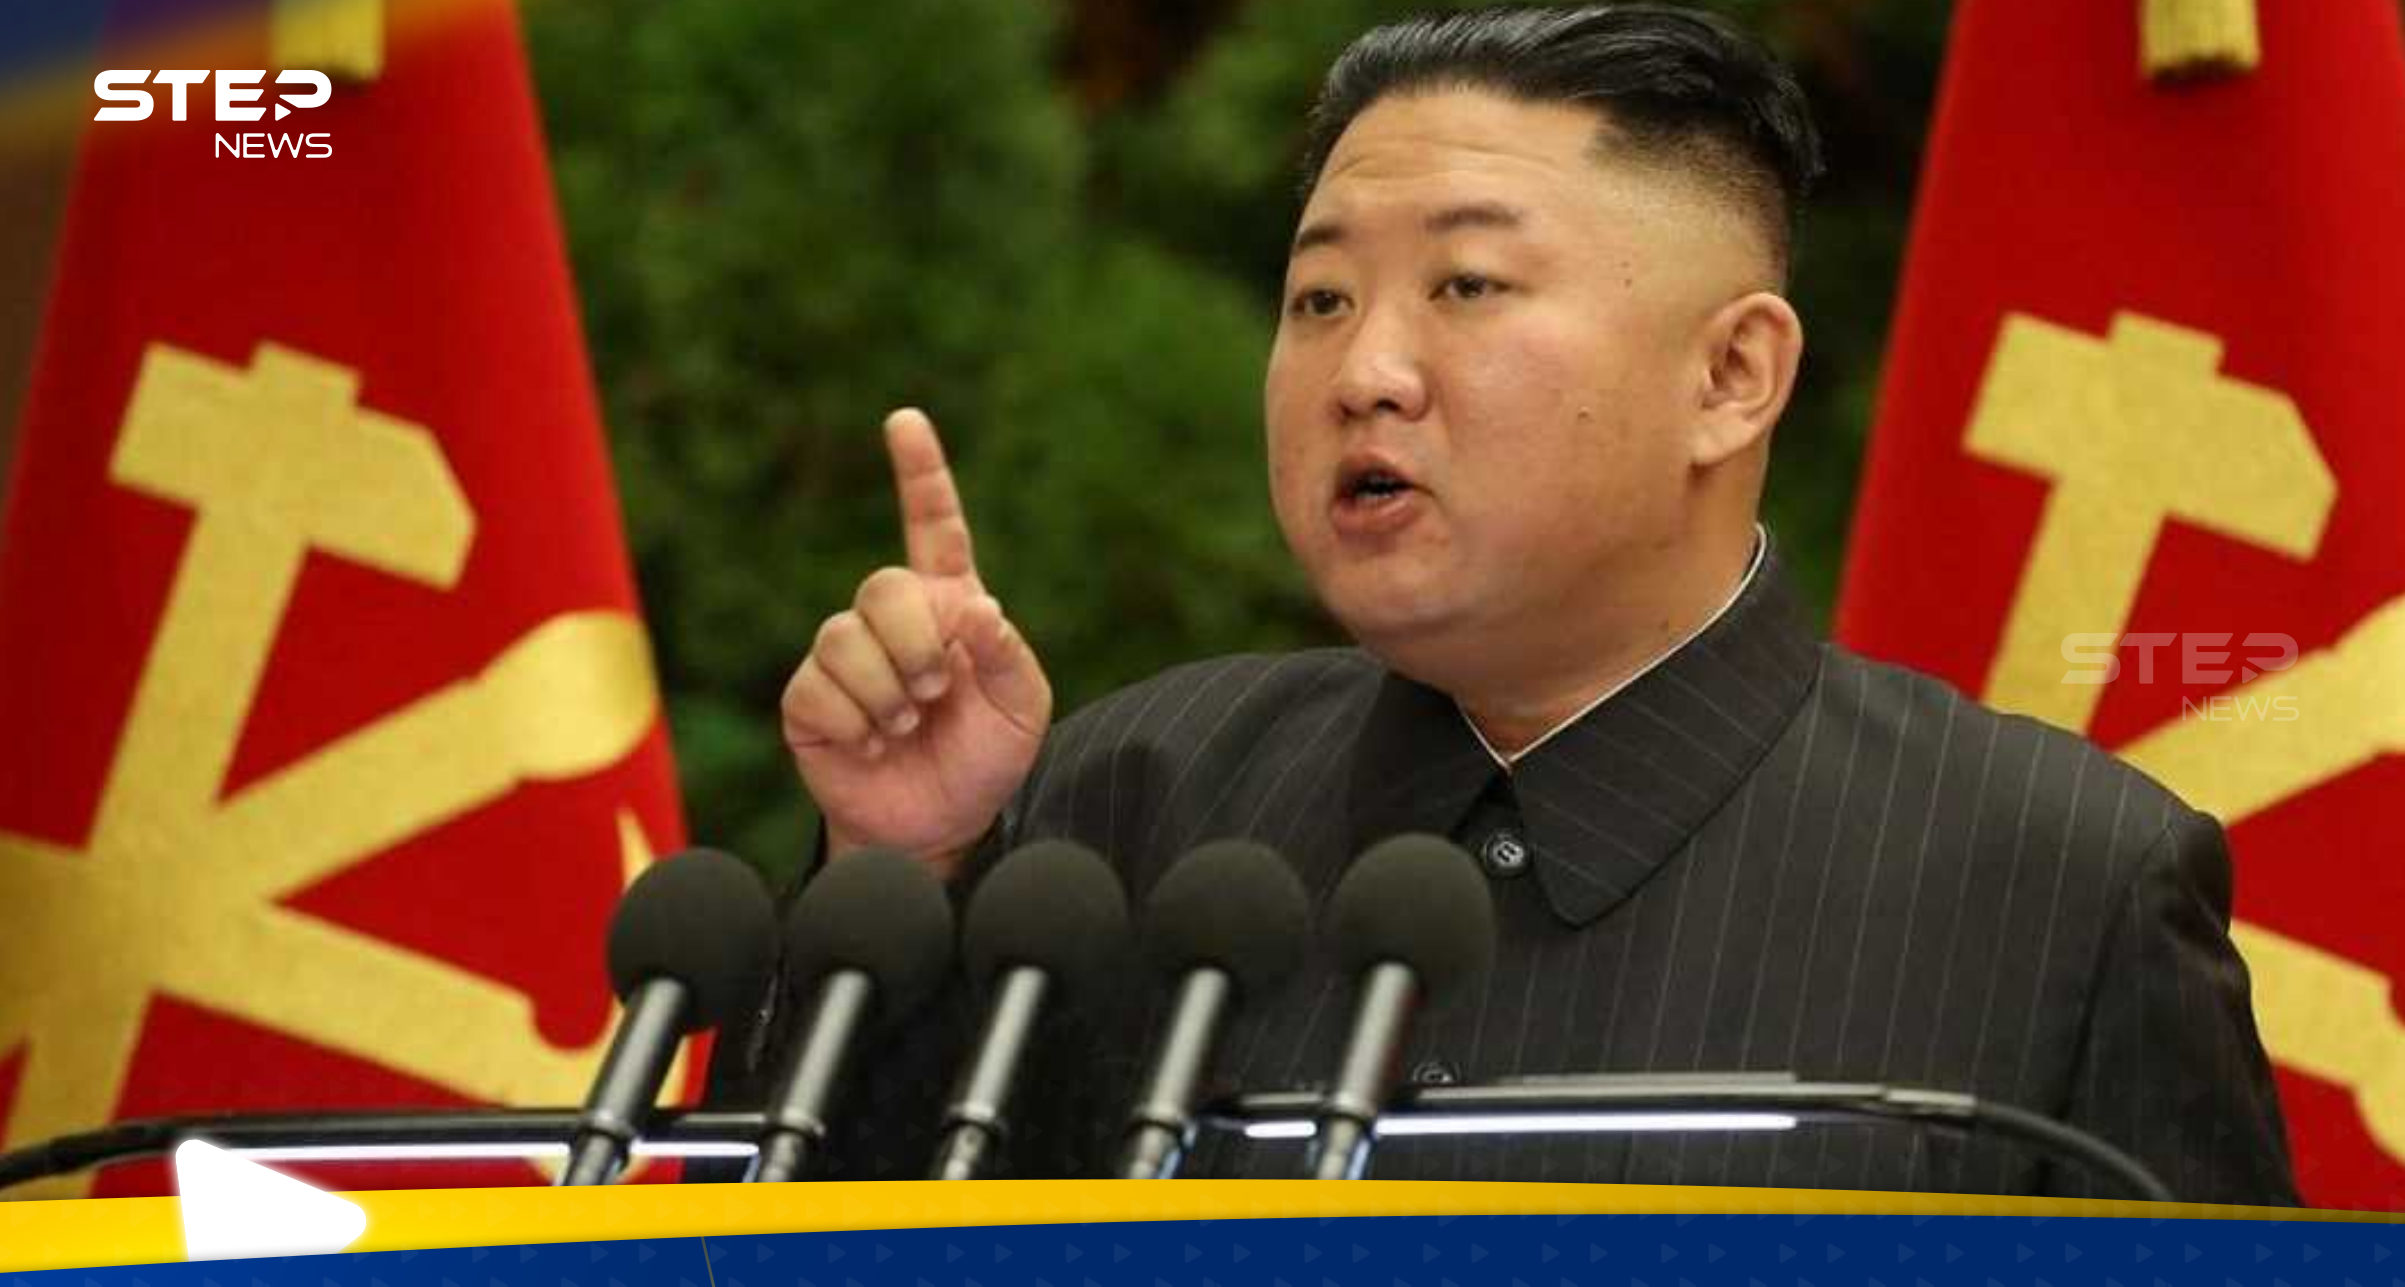 ملليمترات قليلة تفصل عن الحرب.. الزعيم الكوري الشمالي يحذر من "استفزاز" 